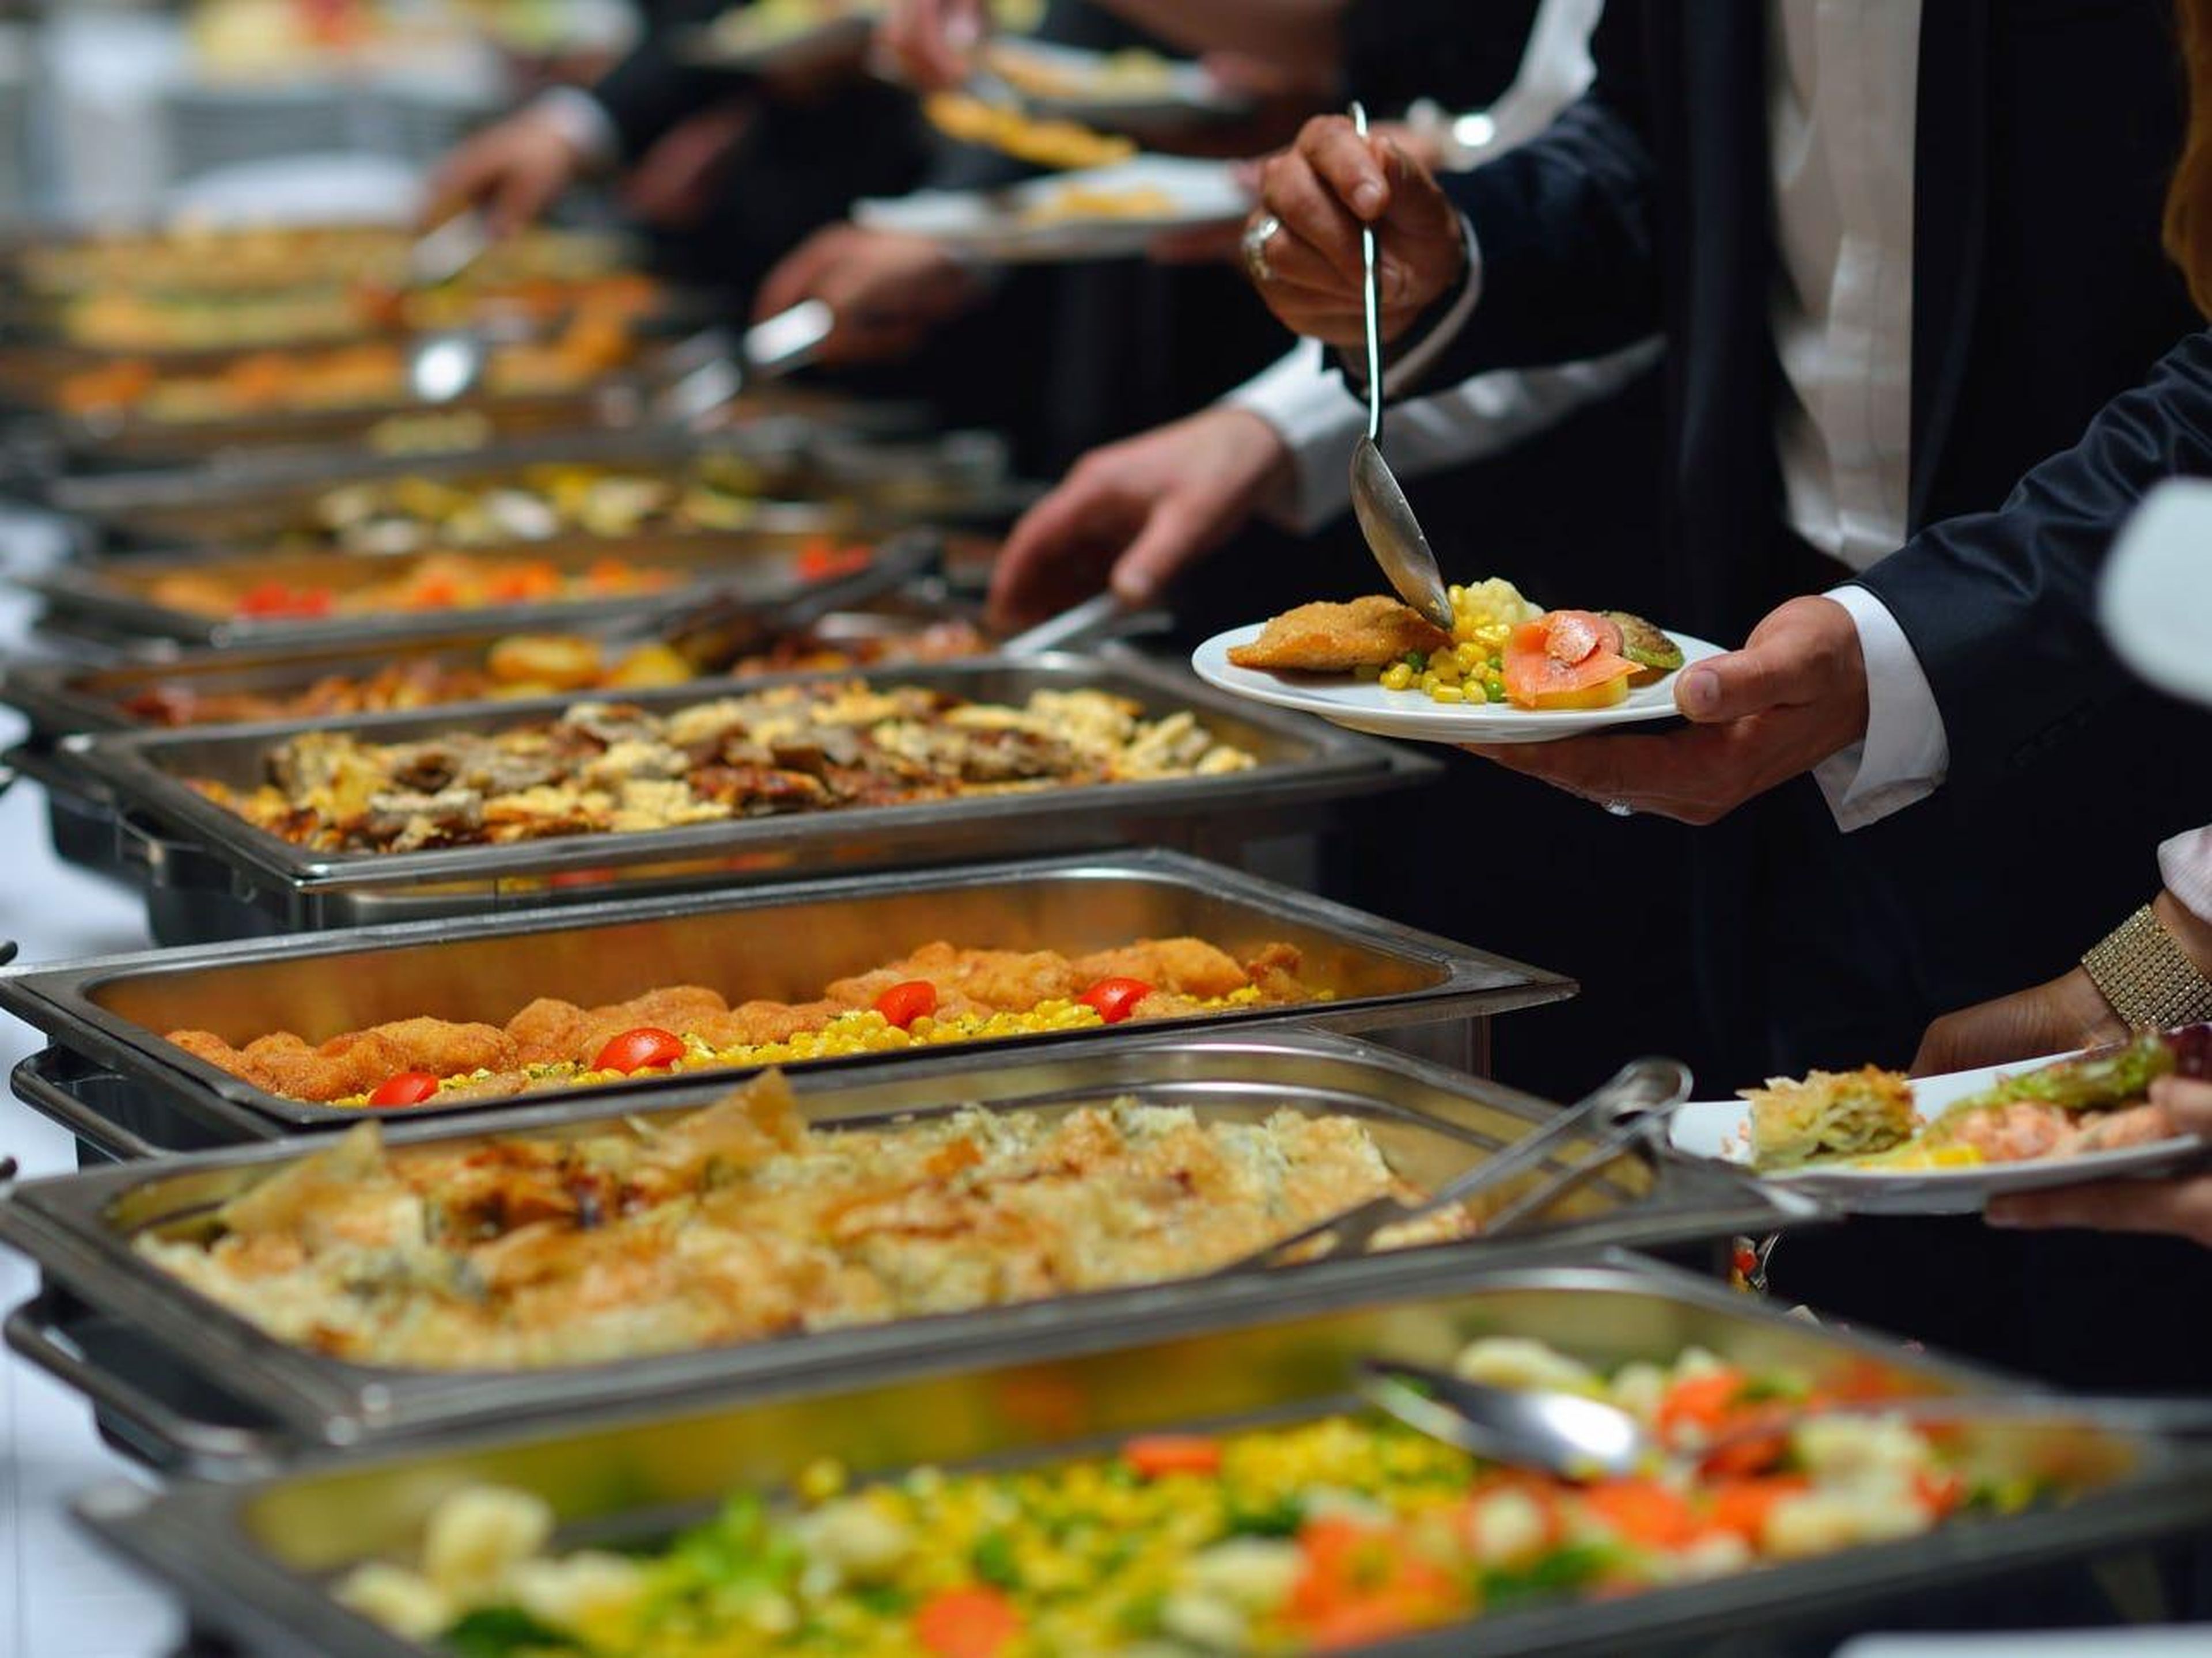 El coste de alimentar a los invitados de tu boda puede superar fácilmente el de la celebración, decoraciones o incluso el lugar del banquete.